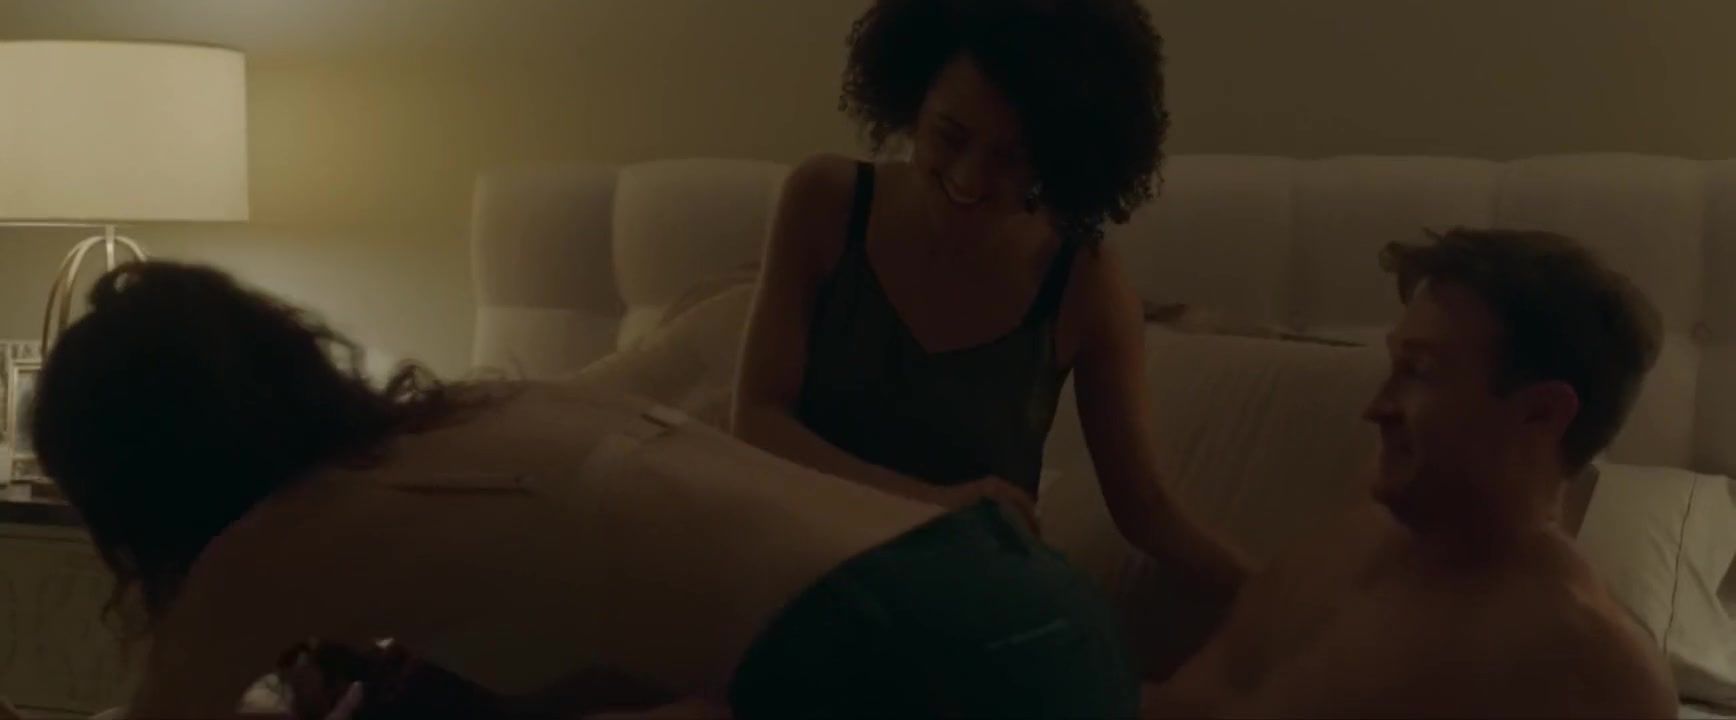 Messy Black Nathalie Emmanuel joins white co-star Britt Lower nude in Holly Slept Over (2020) Anon-V